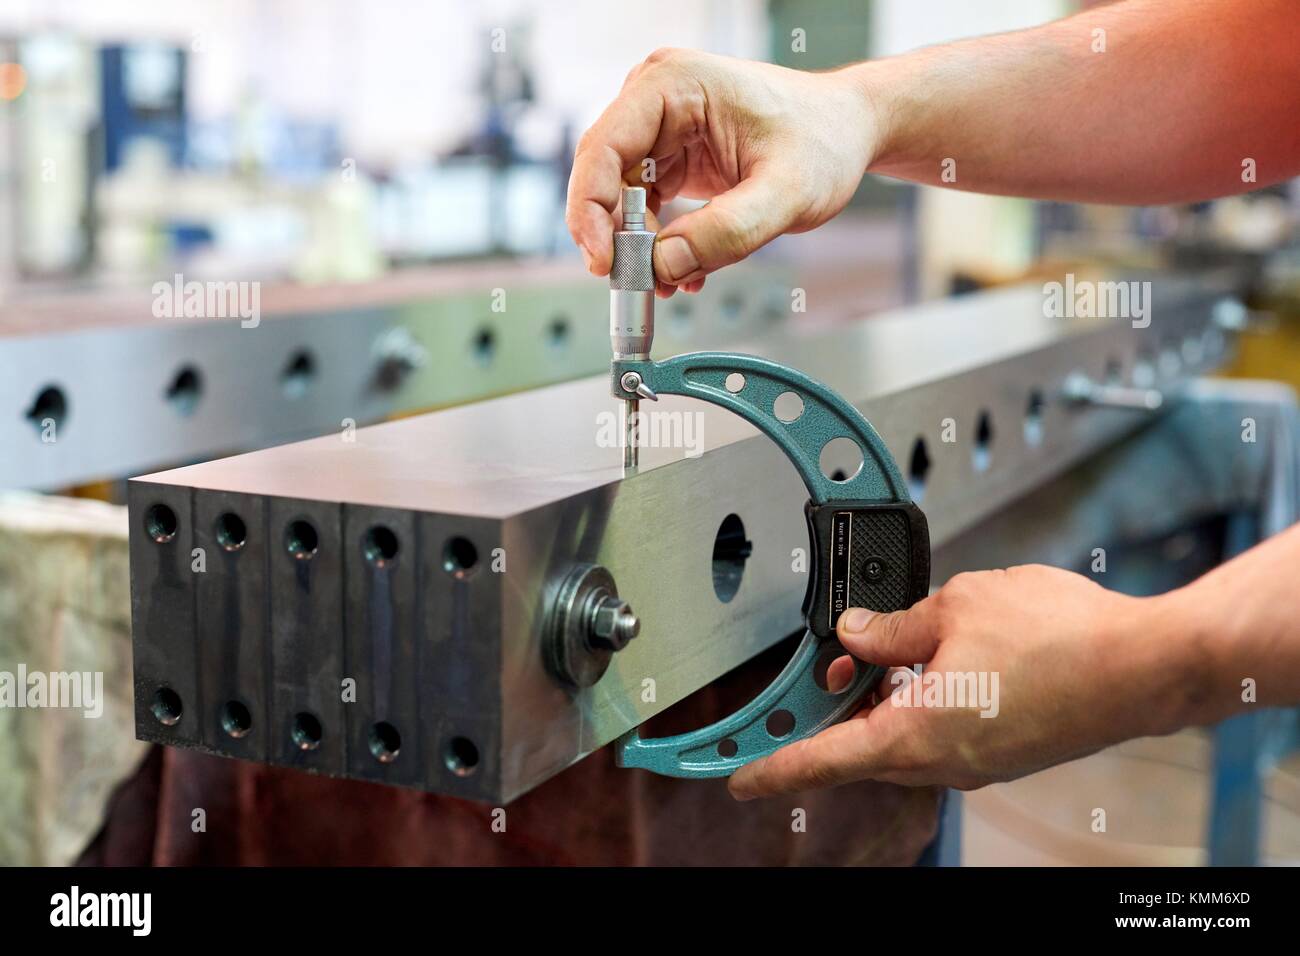 Qualitätskontrolle Techniker, Kontrolle der Messung mit einem Mikrometer, mechanische Industrie, Gipuzkoa, Baskenland, Spanien, Europa Stockfoto